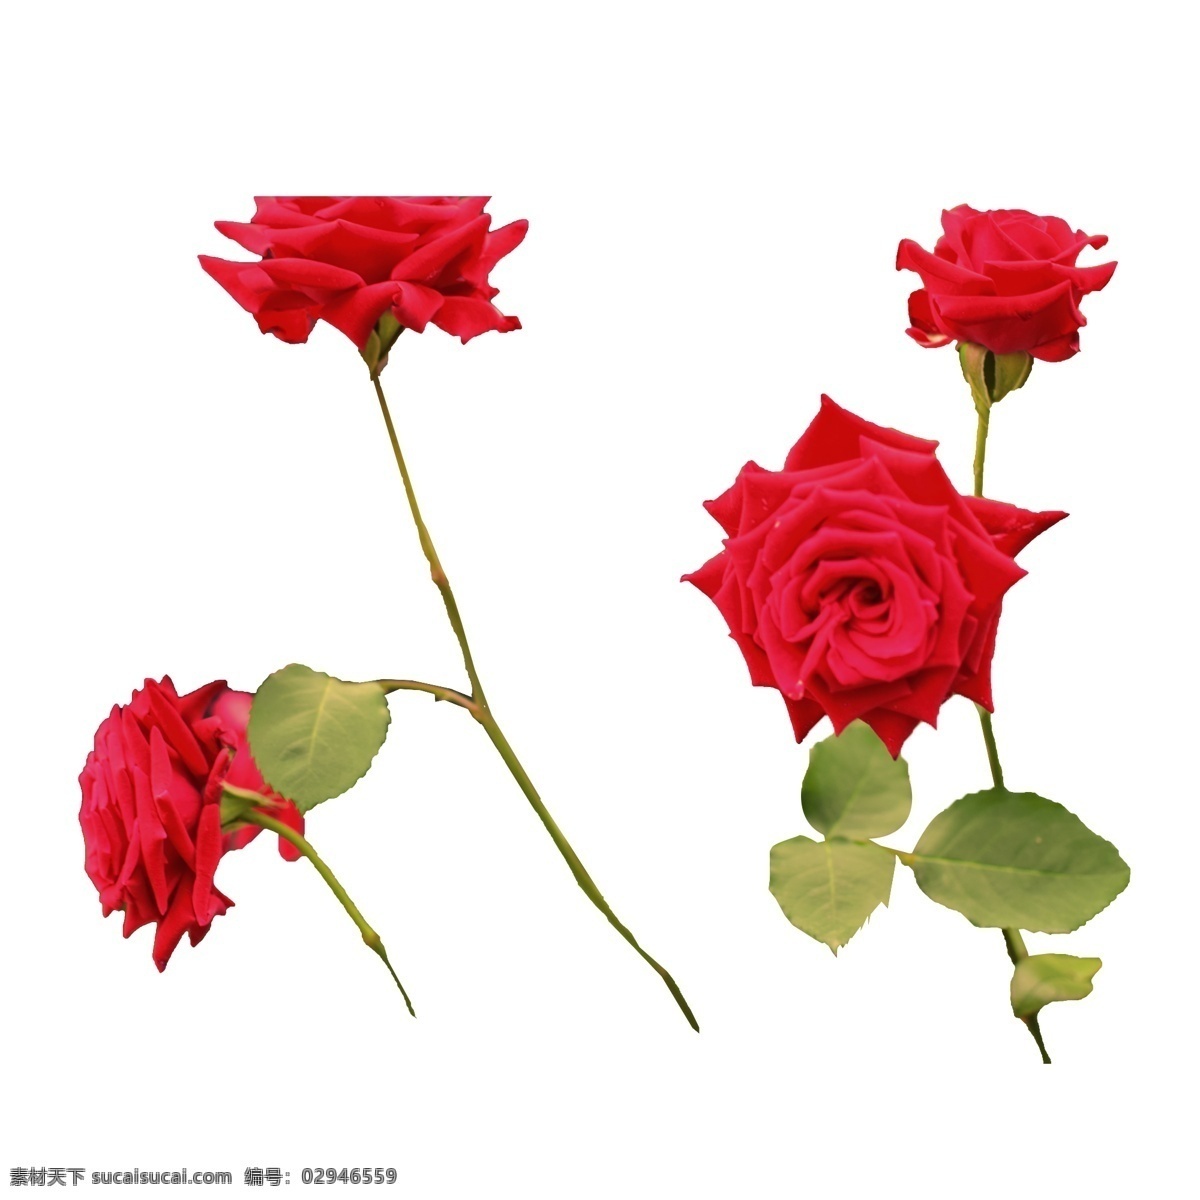 一些 盛开 红玫瑰 玫瑰花 玫瑰 盛开的 绽放 美丽 新鲜 植物 生物世界 花草 情人节 节日